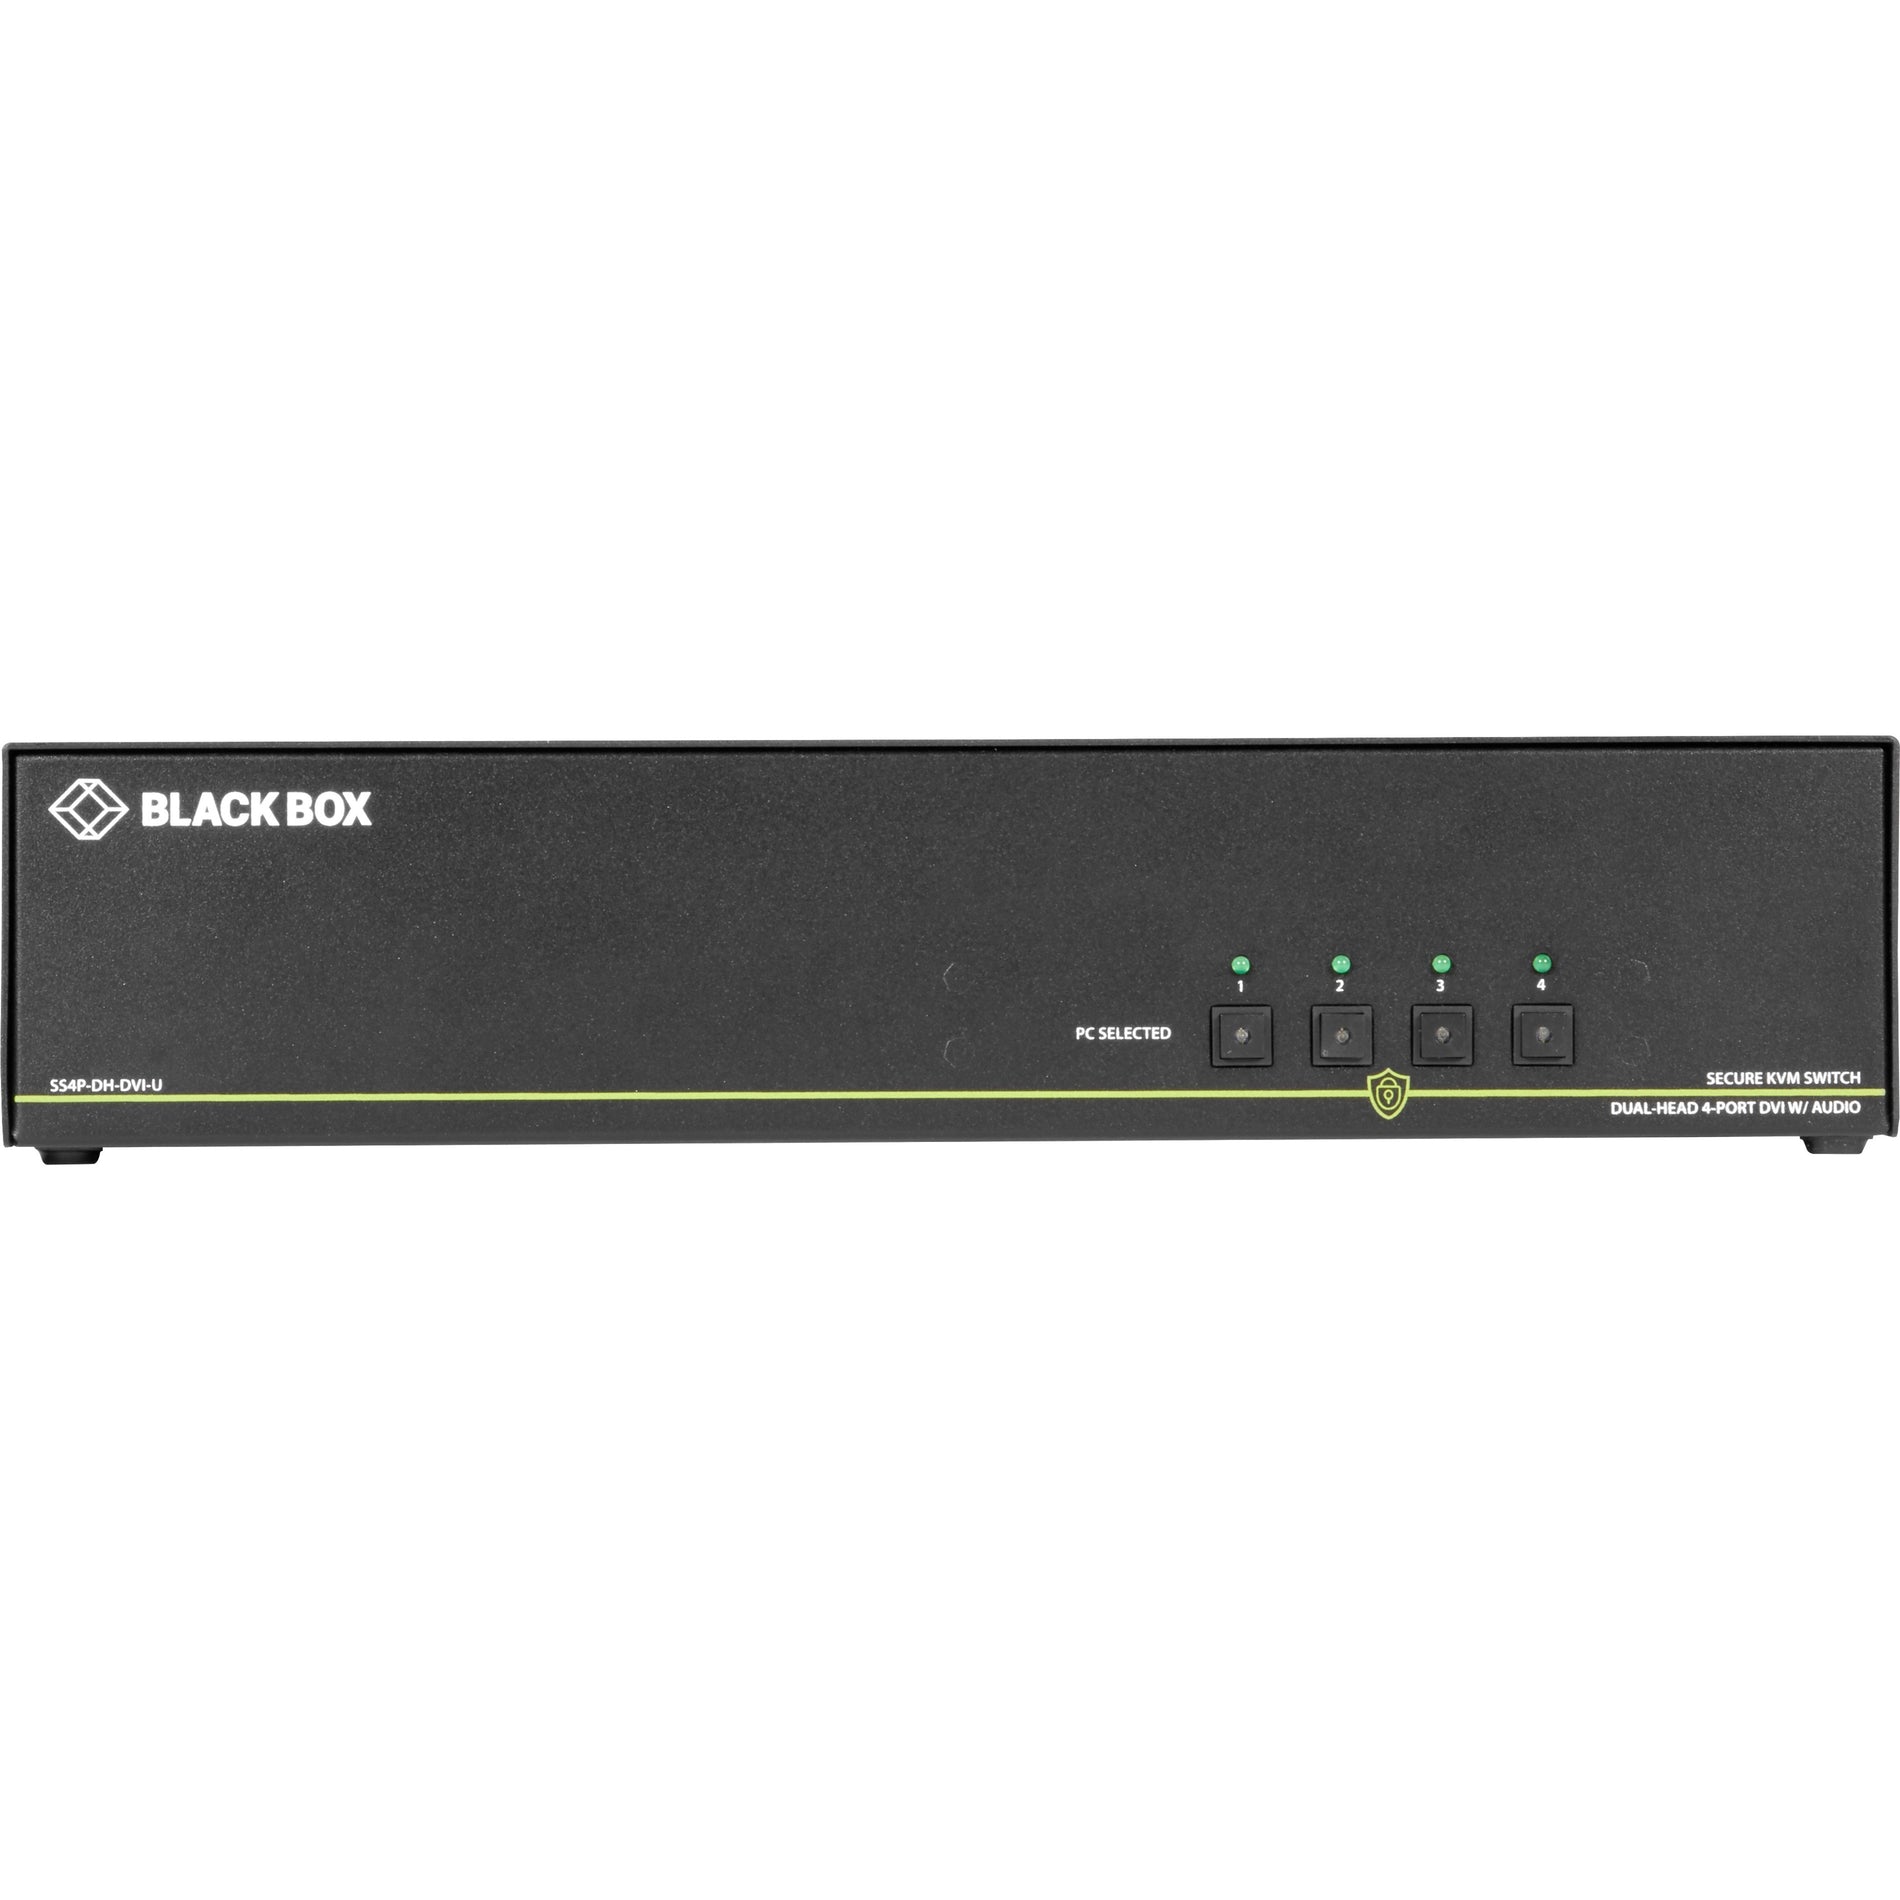 Black Box SS4P-DH-DVI-U NIAP 3.0 Secure 4-Port Dual-Head DVI-I KVM Switch, 3840 x 2160 Resolution, TAA Compliant, 3 Year Warranty